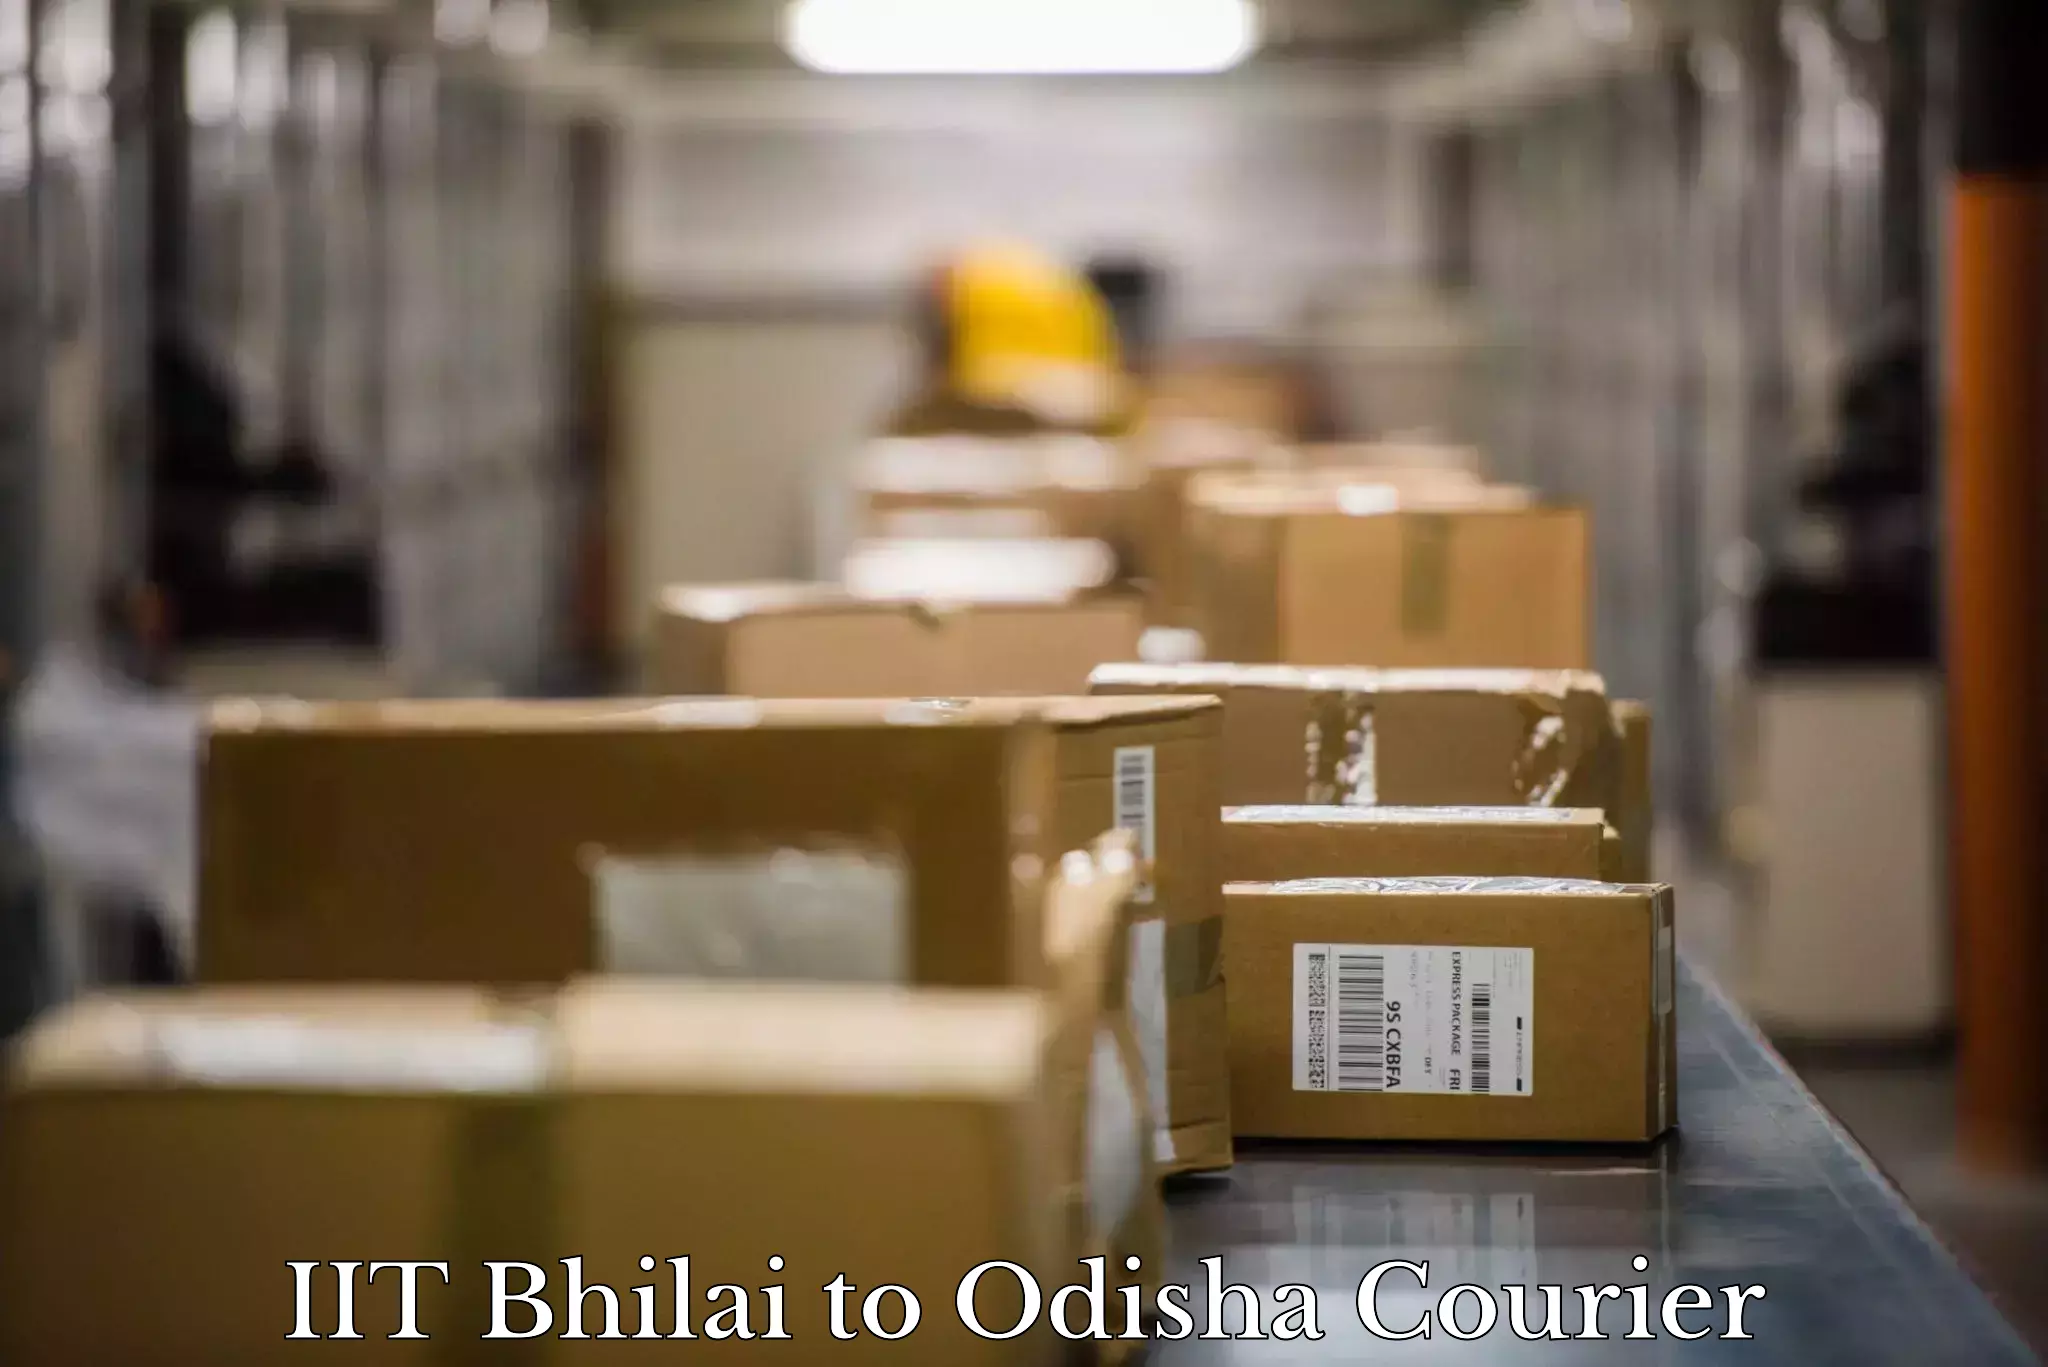 Furniture transport services IIT Bhilai to Tikiri